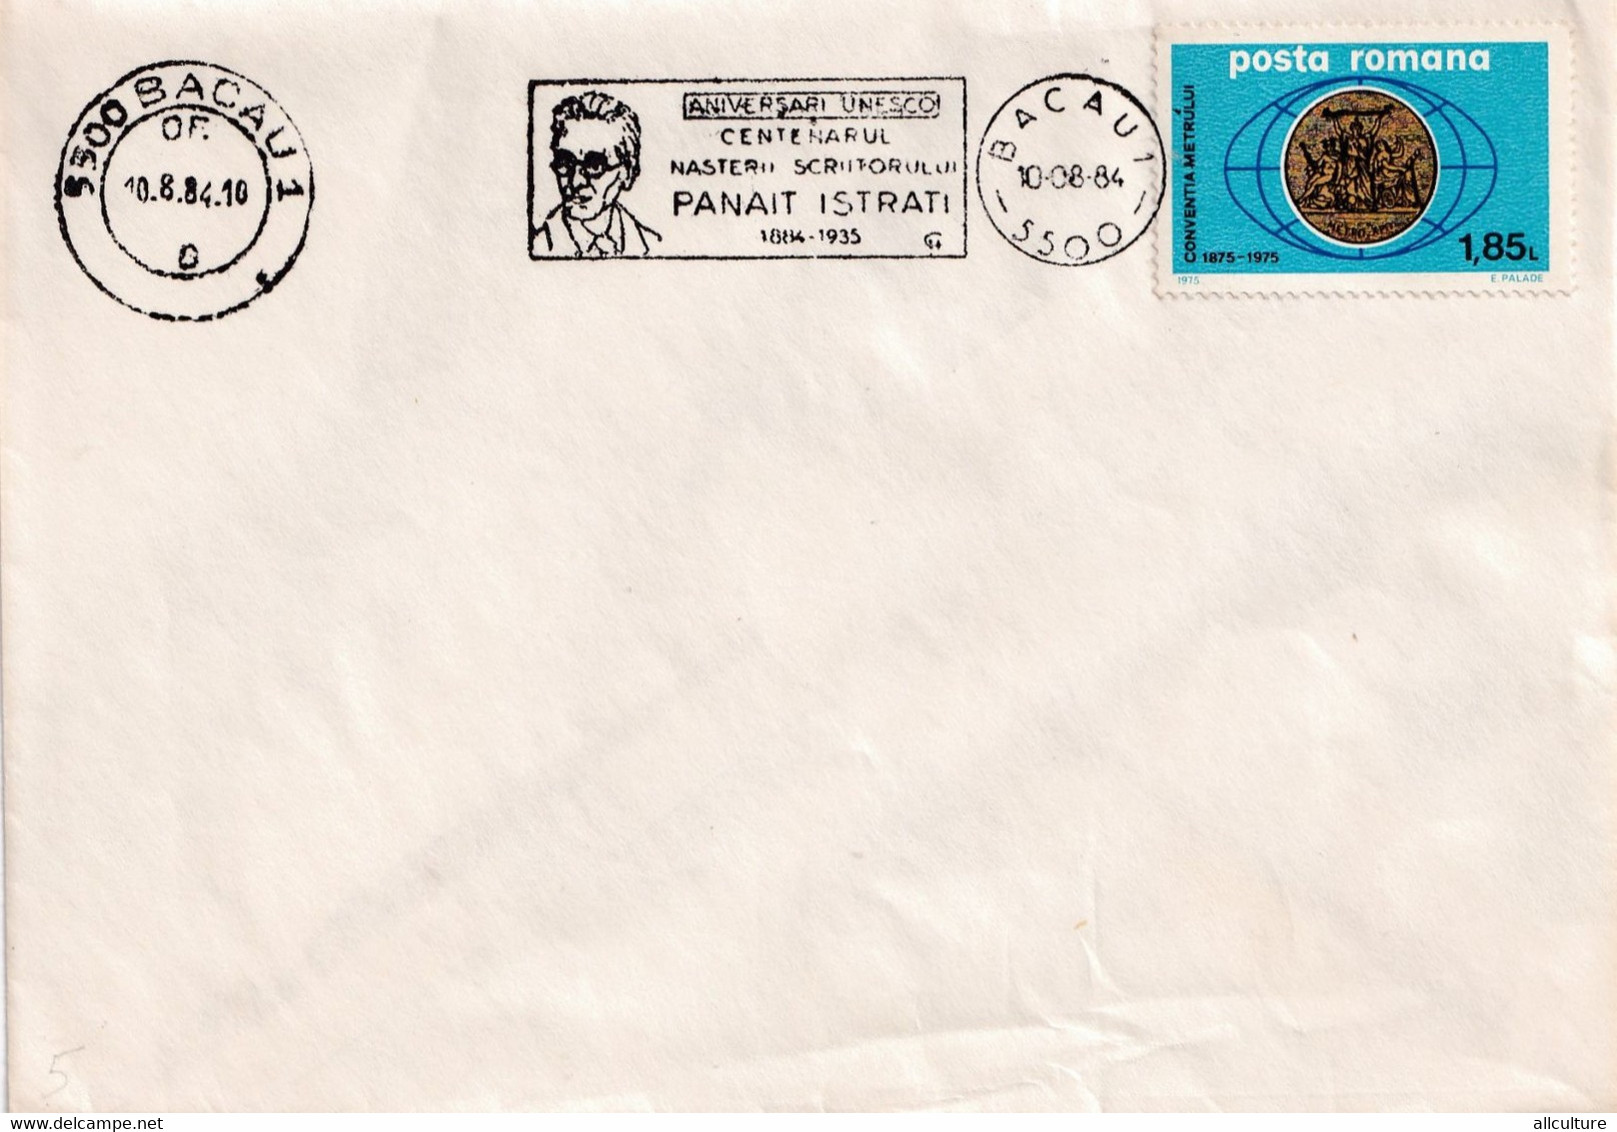 A2820 - Aniversari UNESCO, Centenarul Nasterii Scriitorului Panait Istrati, Bacau 1984 Romania - Storia Postale